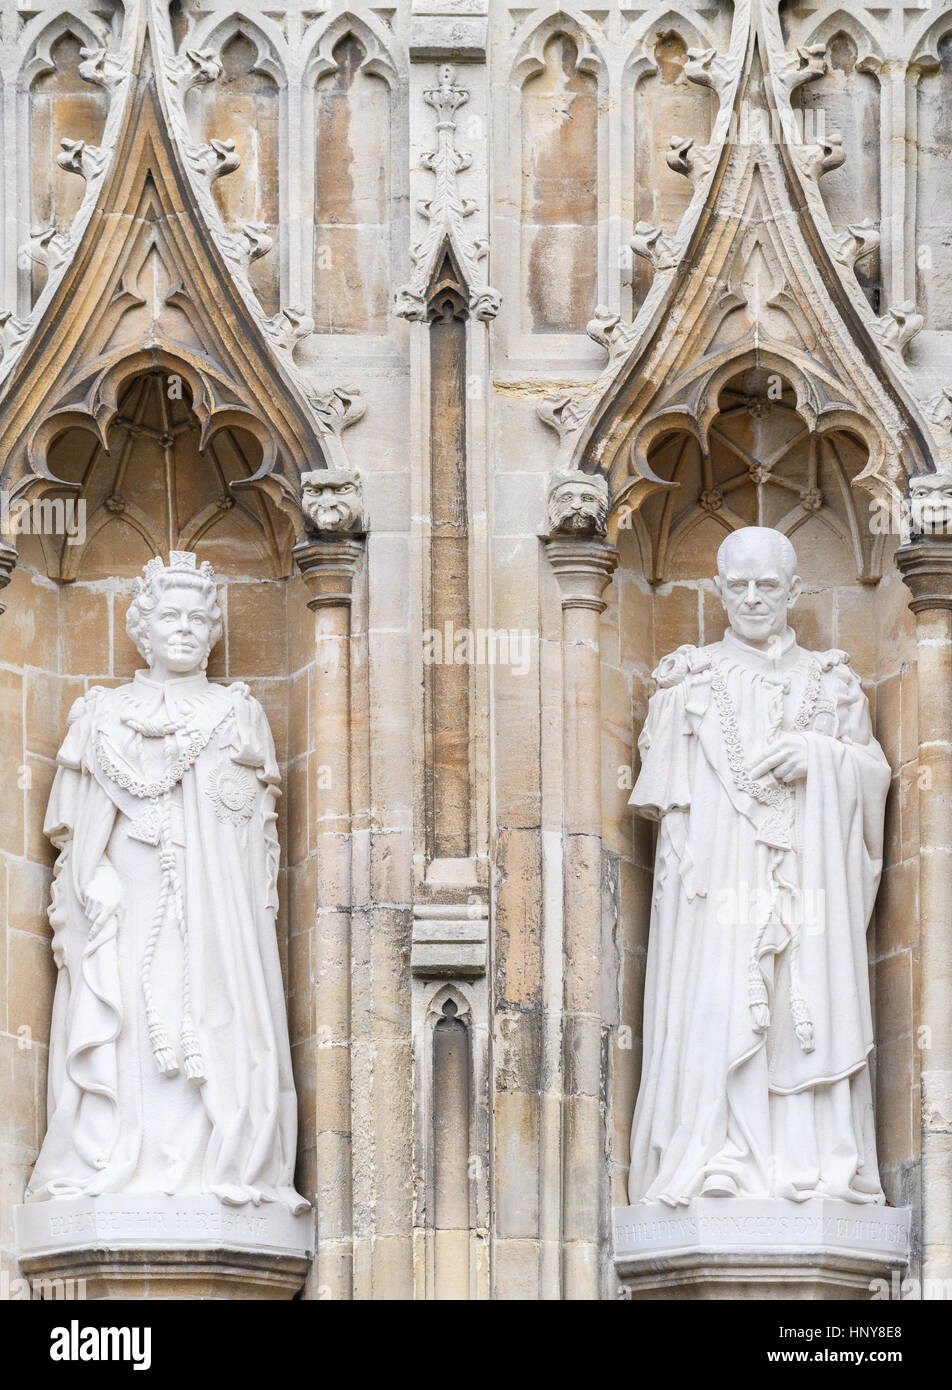 Statuen der Königin Elizabeth II und Prinz Philip auf einer Außenwand an die Kathedrale von Canterbury, England. Stockfoto